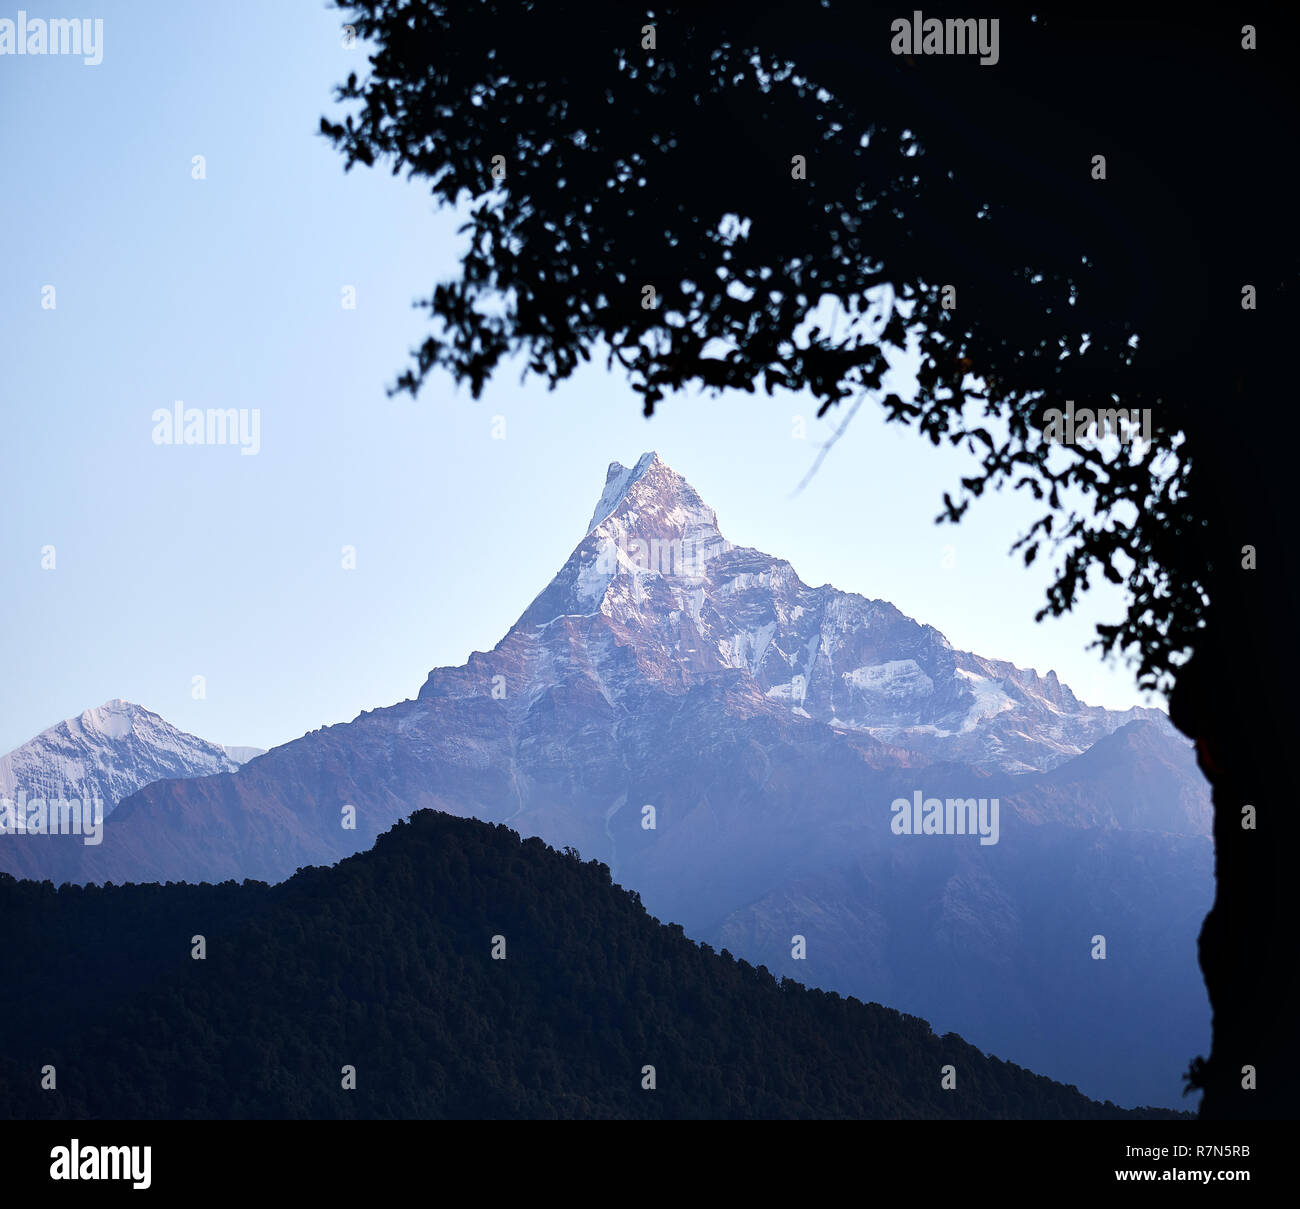 Himalaya Mountain Machapuchare del racconto di pesce il framing di tree silhouette al sunrise in Nepal Foto Stock